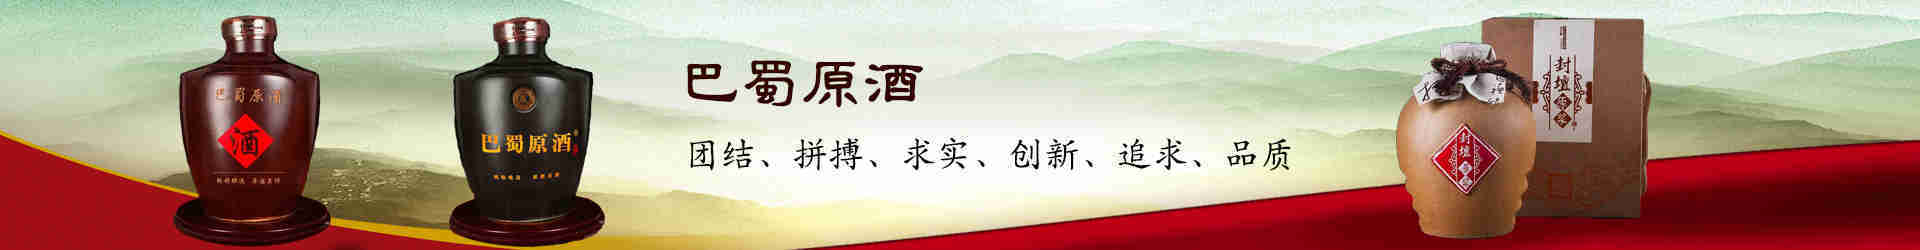 米乐M6(中国)官方网站-登录入口